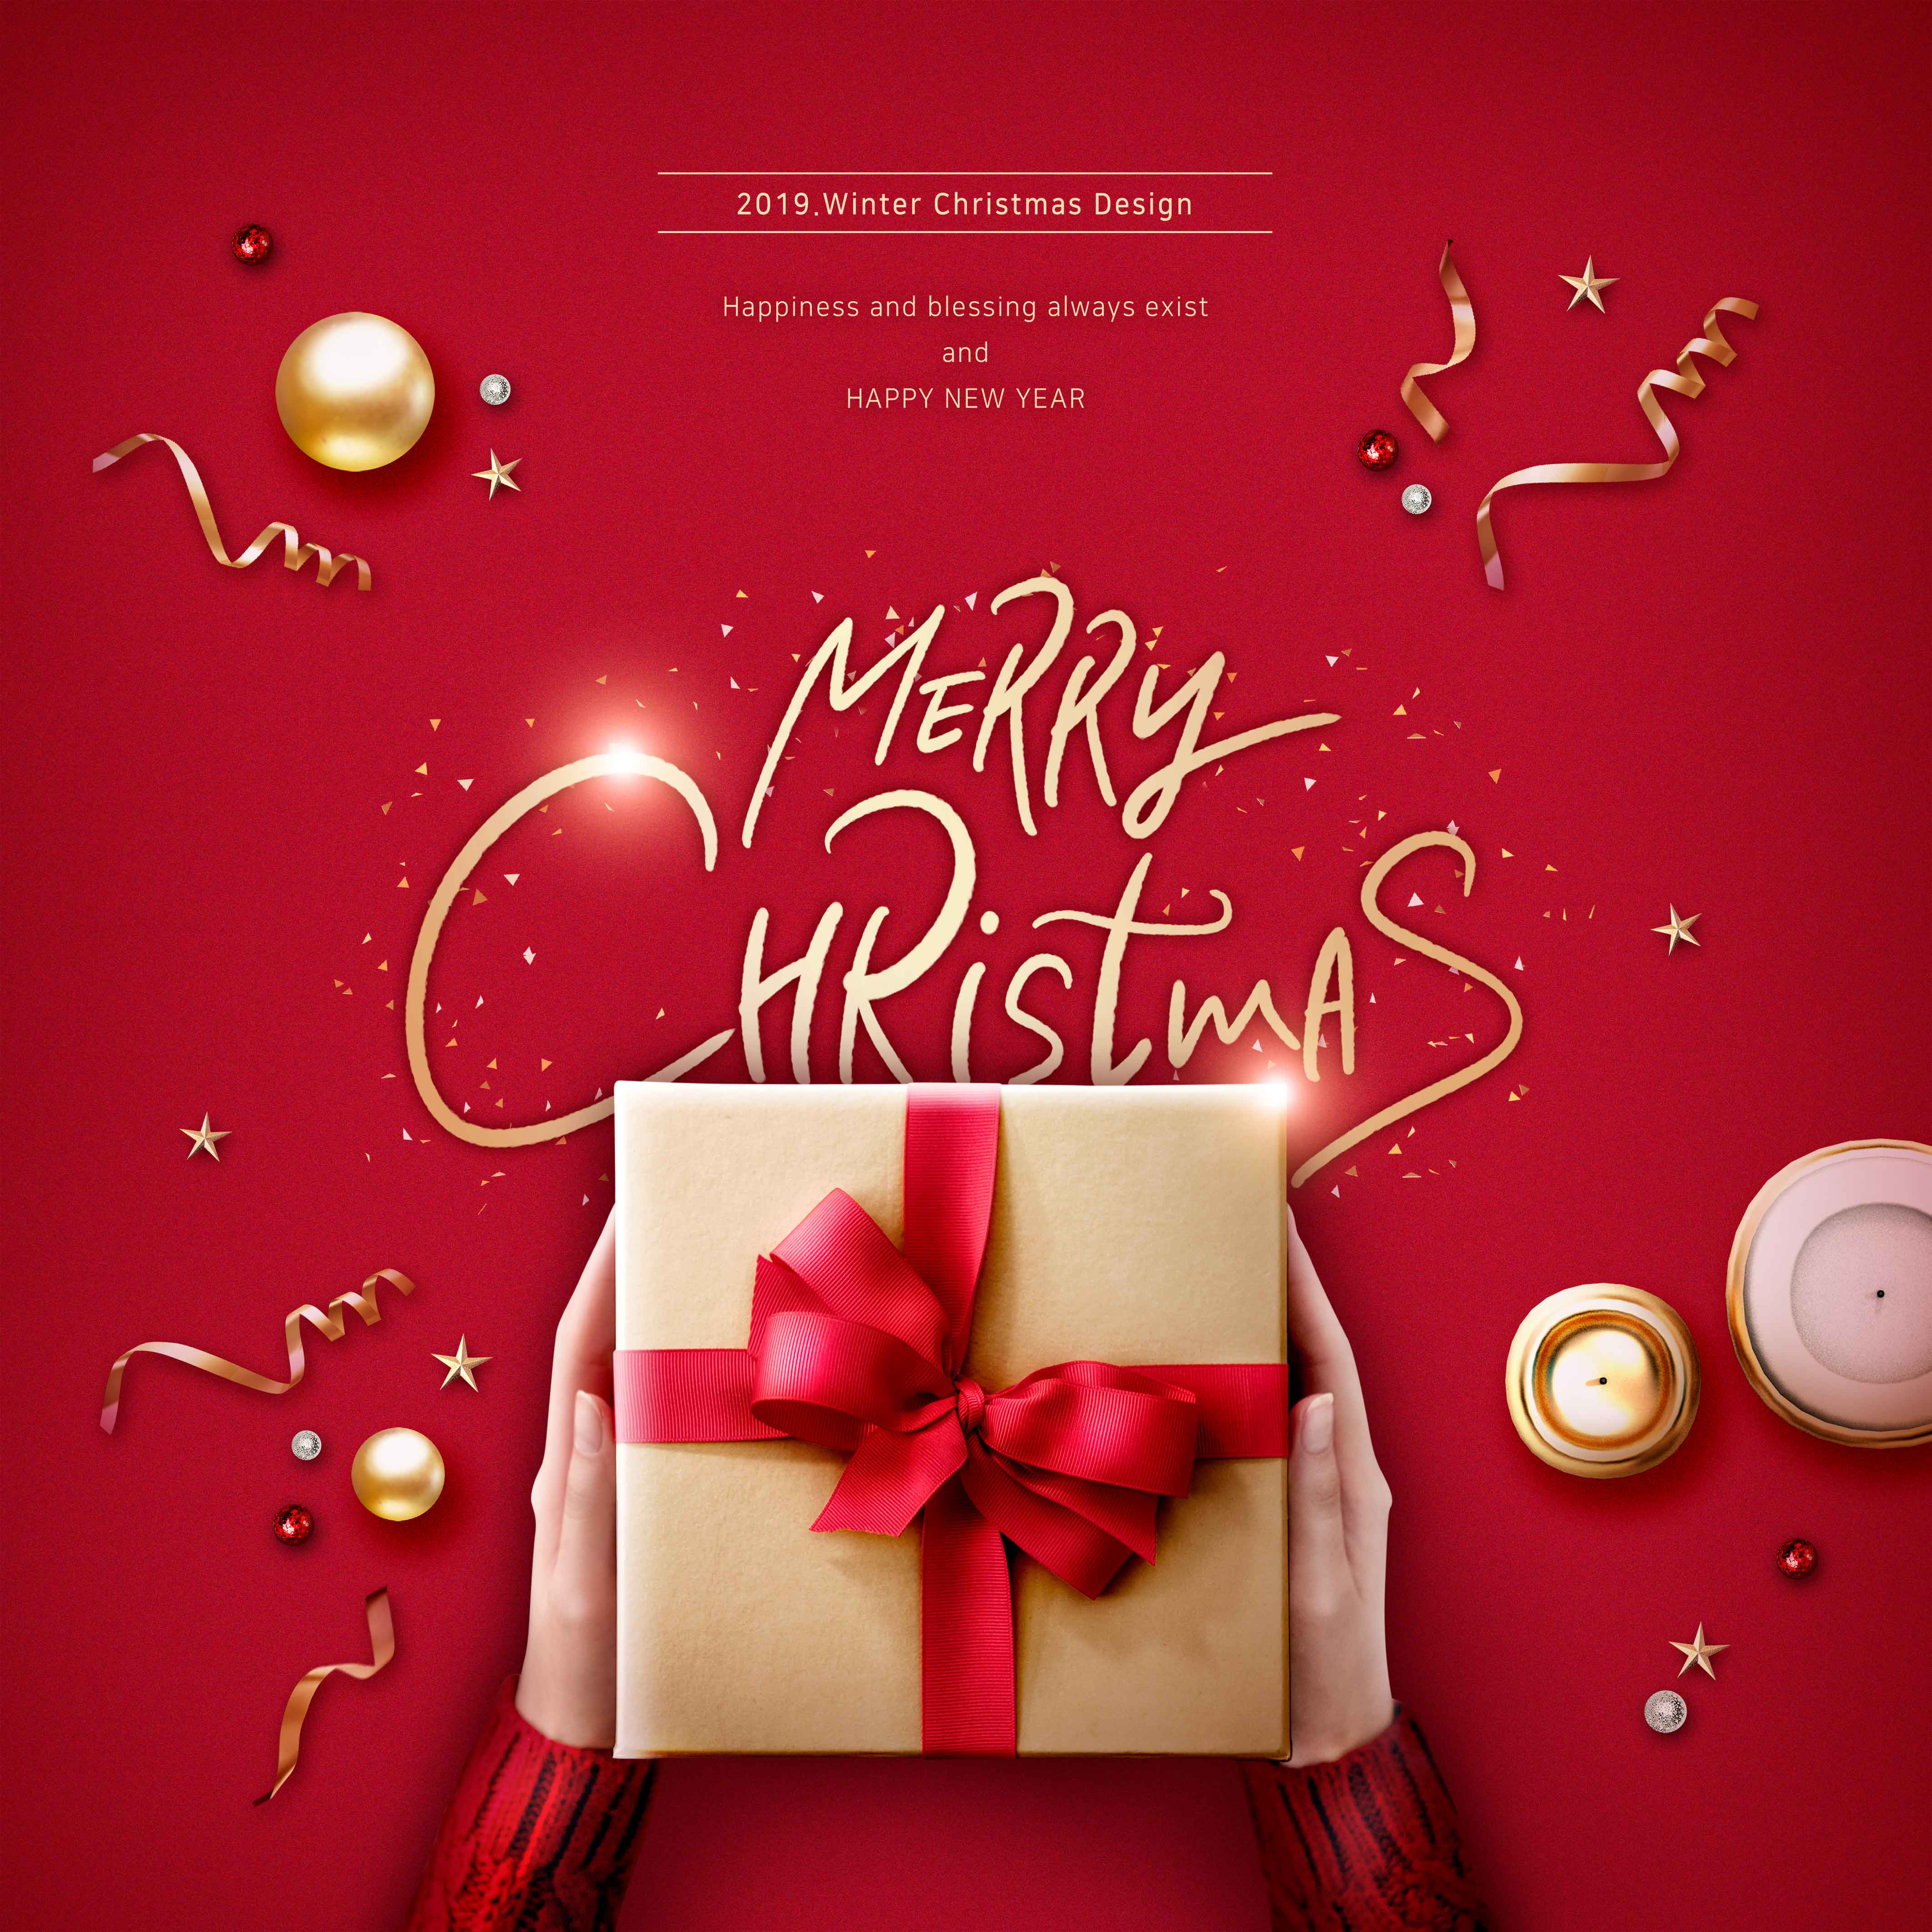 圣诞祝福&冬季圣诞礼物主题海报/贺卡设计素材设计素材模板